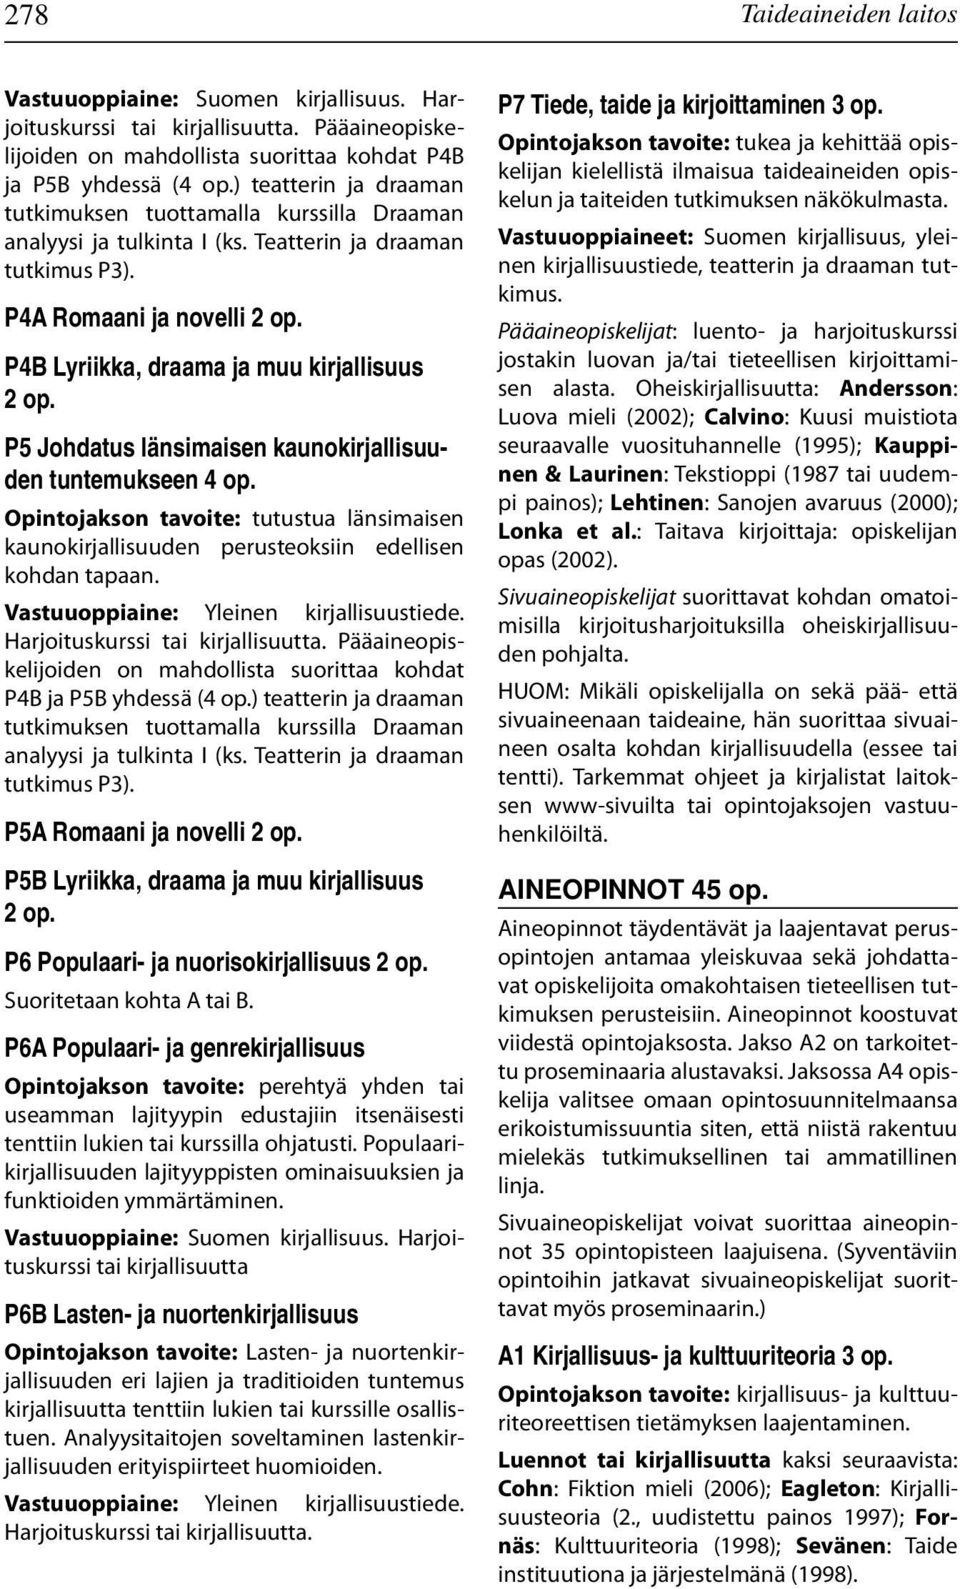 P4B Lyriikka, draama ja muu kirjallisuus 2 op. P5 Johdatus länsimaisen kaunokirjallisuuden tuntemukseen 4 op.